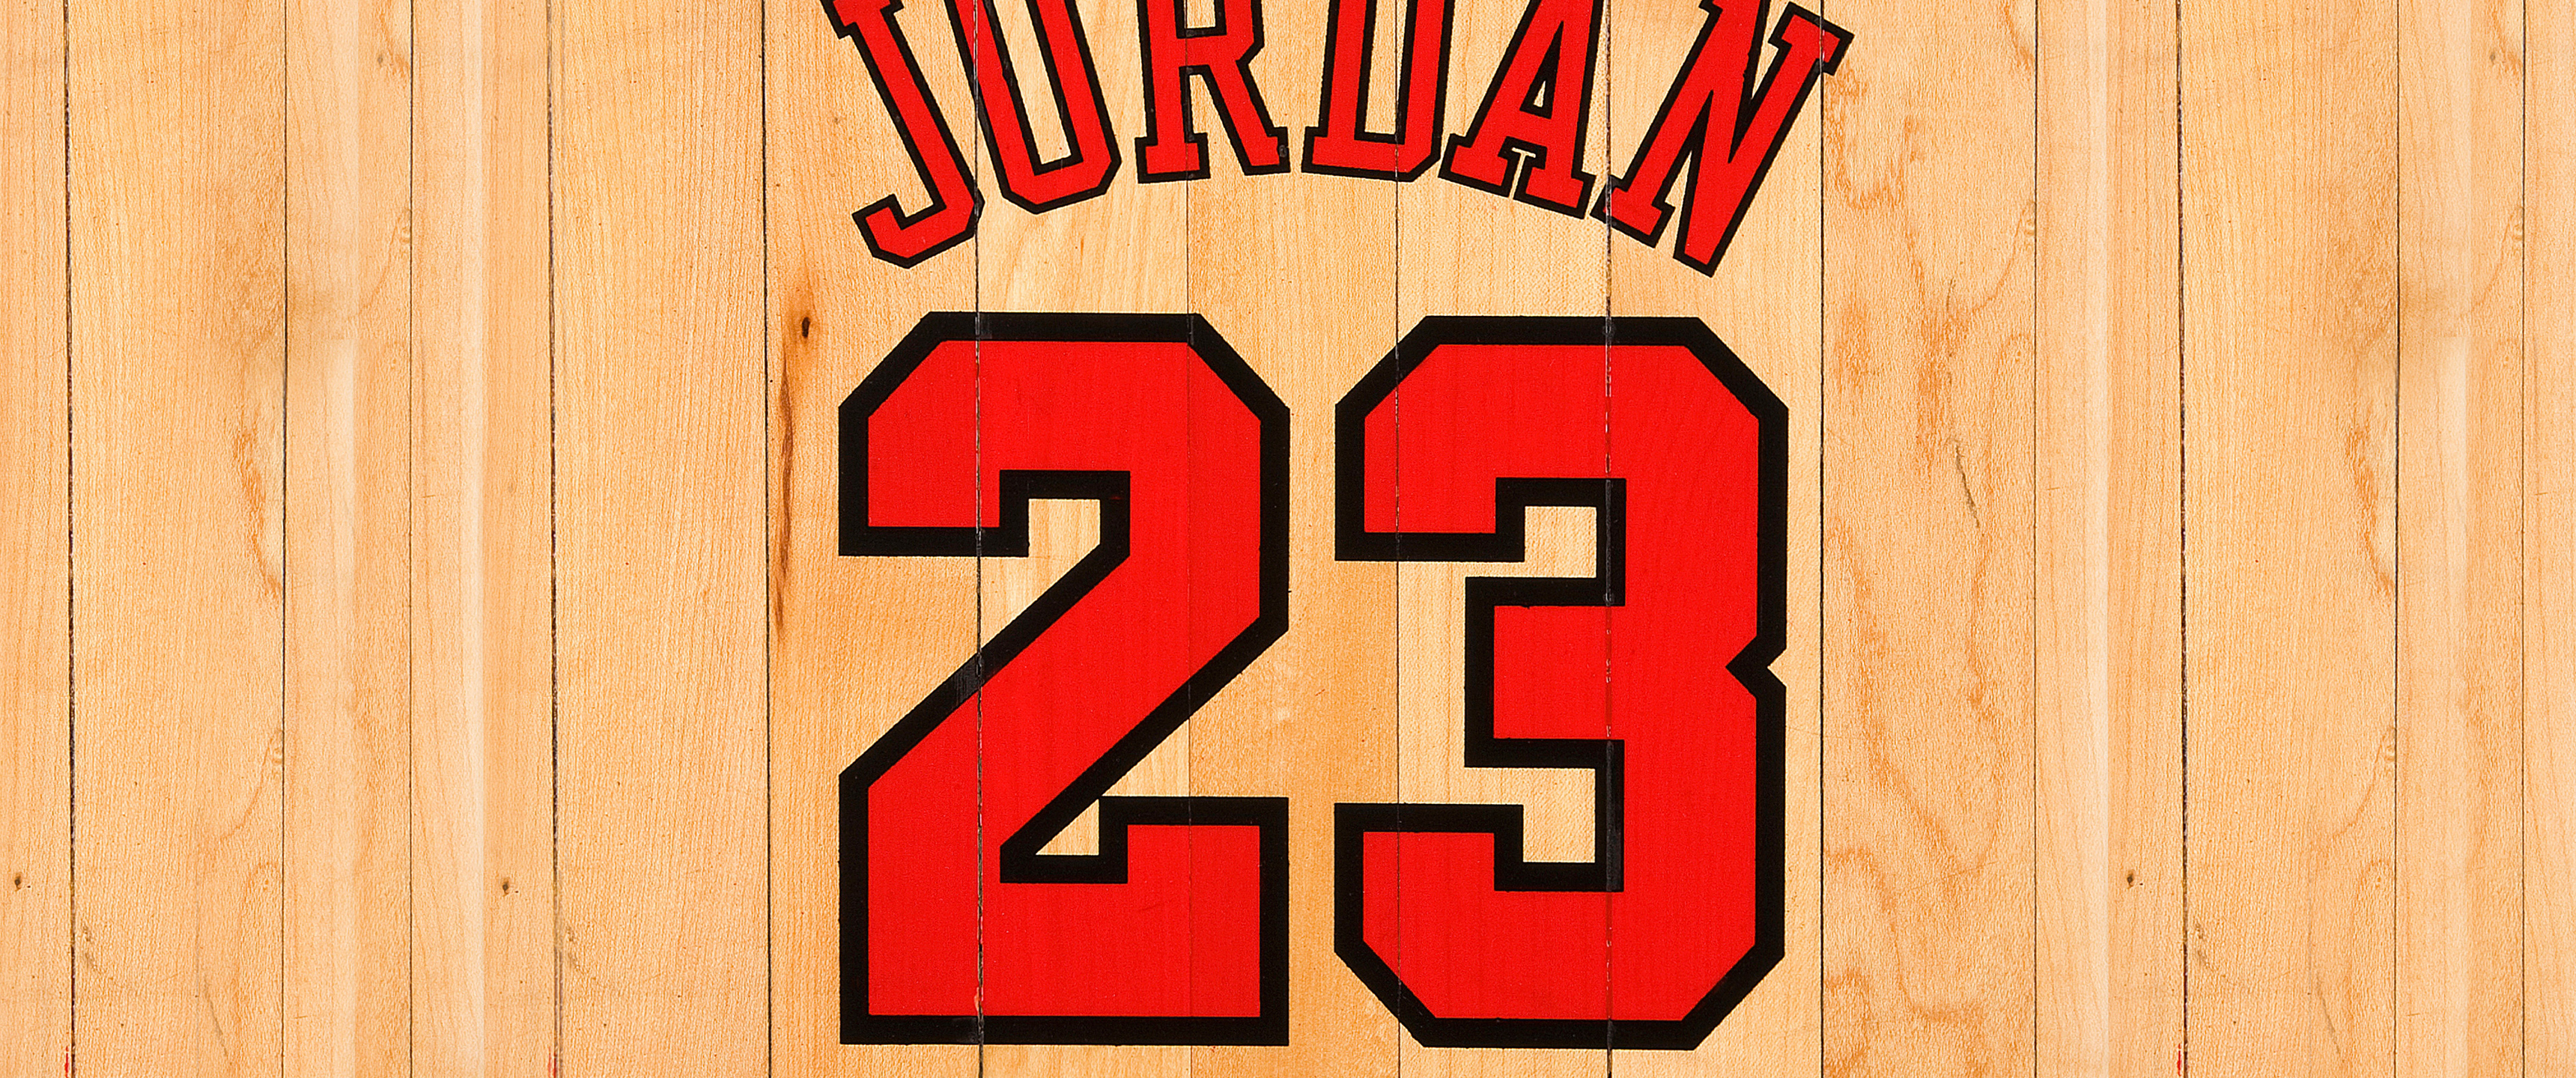 Michael Jordan Wallpaper - EnWallpaper